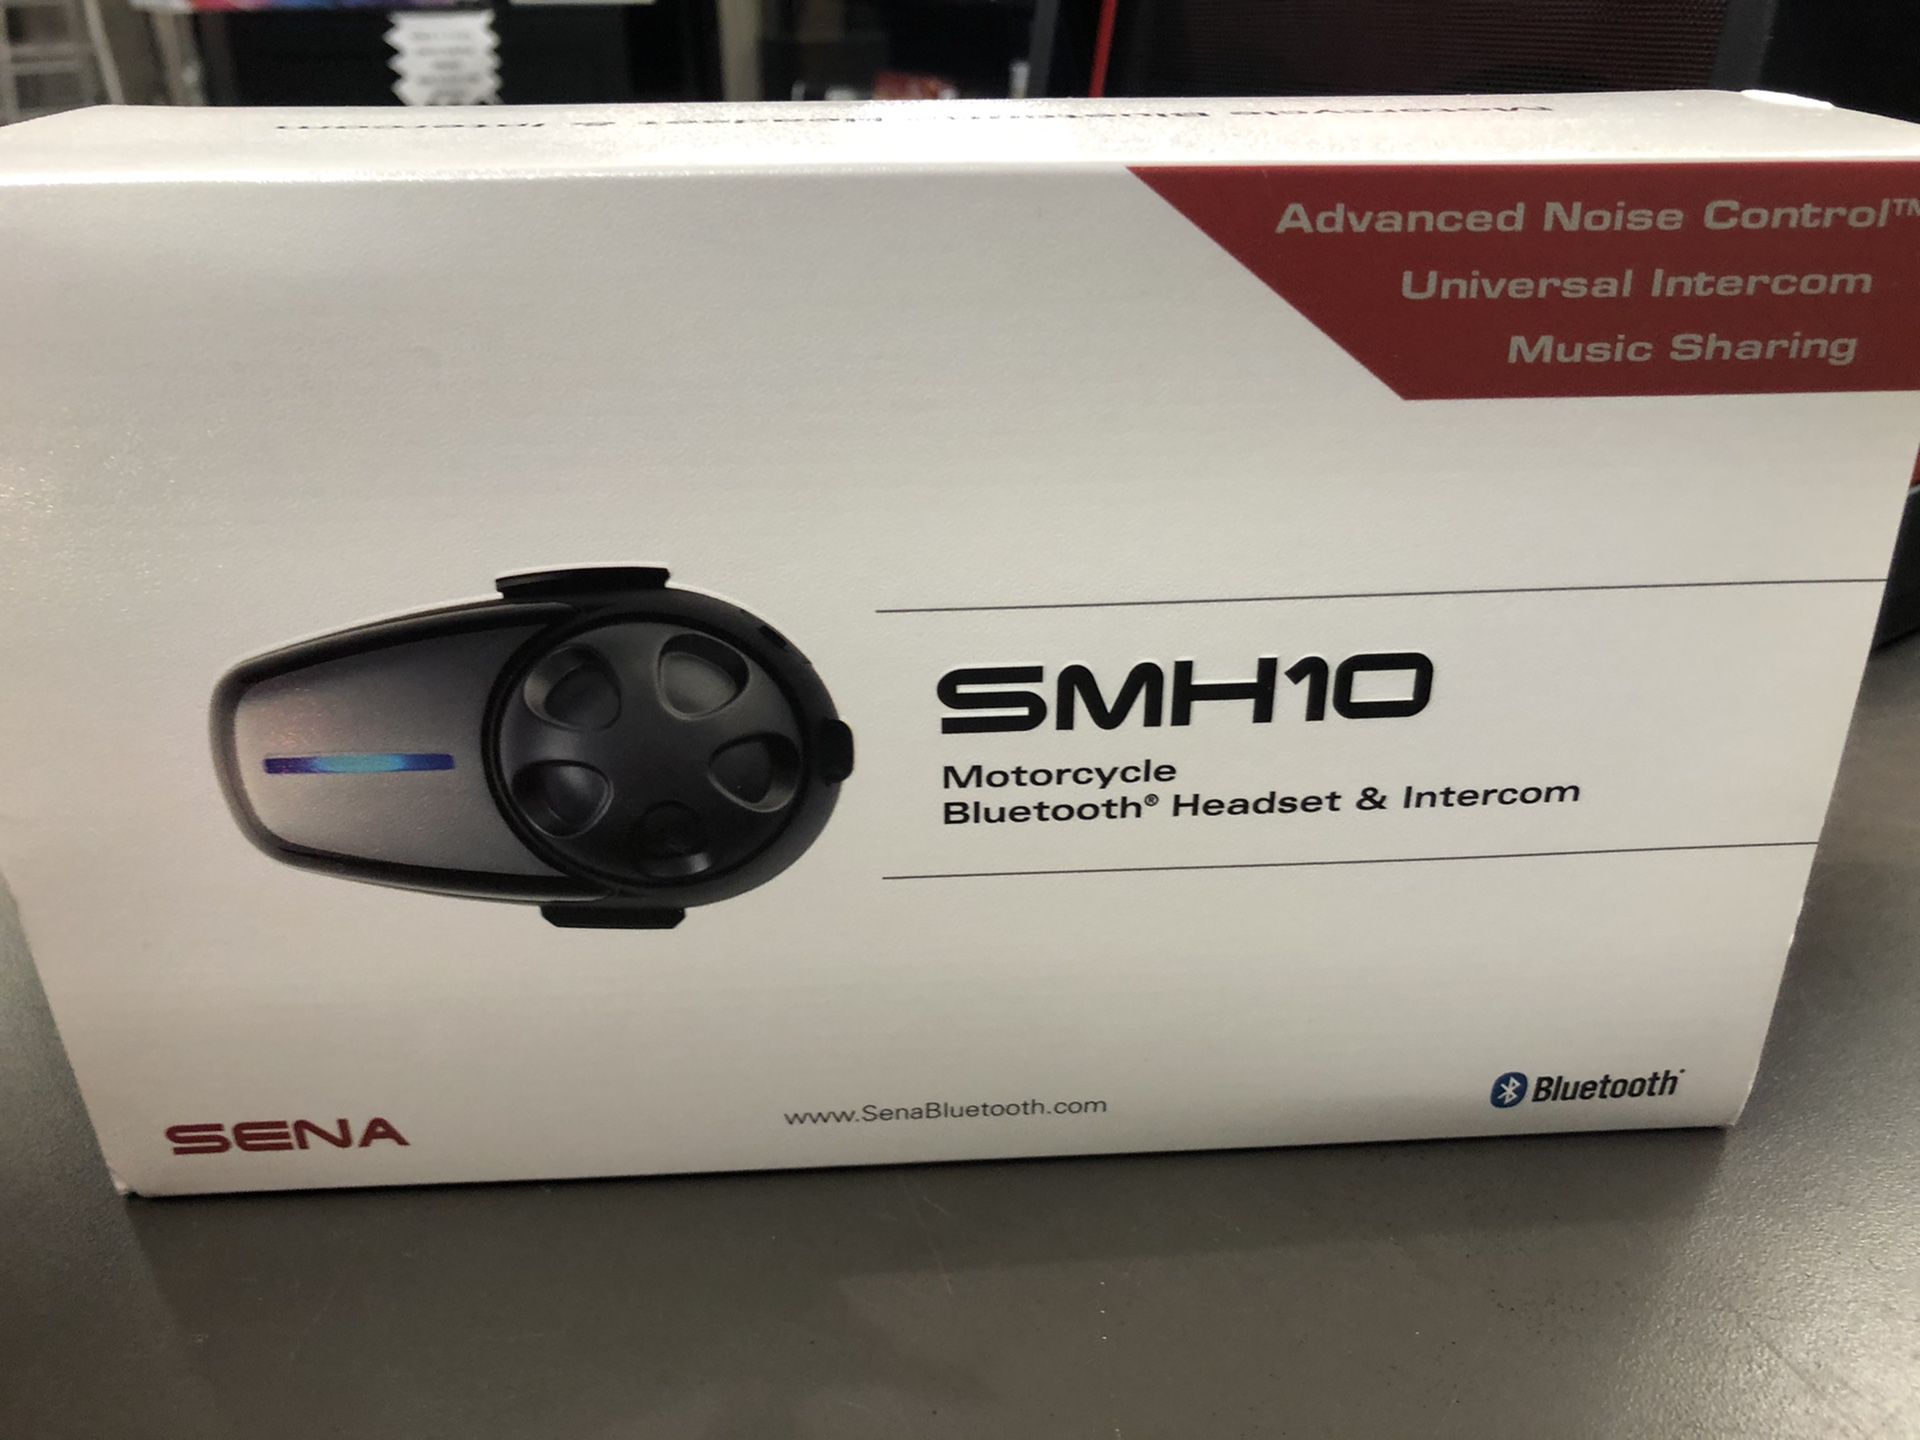 Sena SMH10 motorcycle Bluetooth headset/Intercom w box no trades lock up in Tacoma